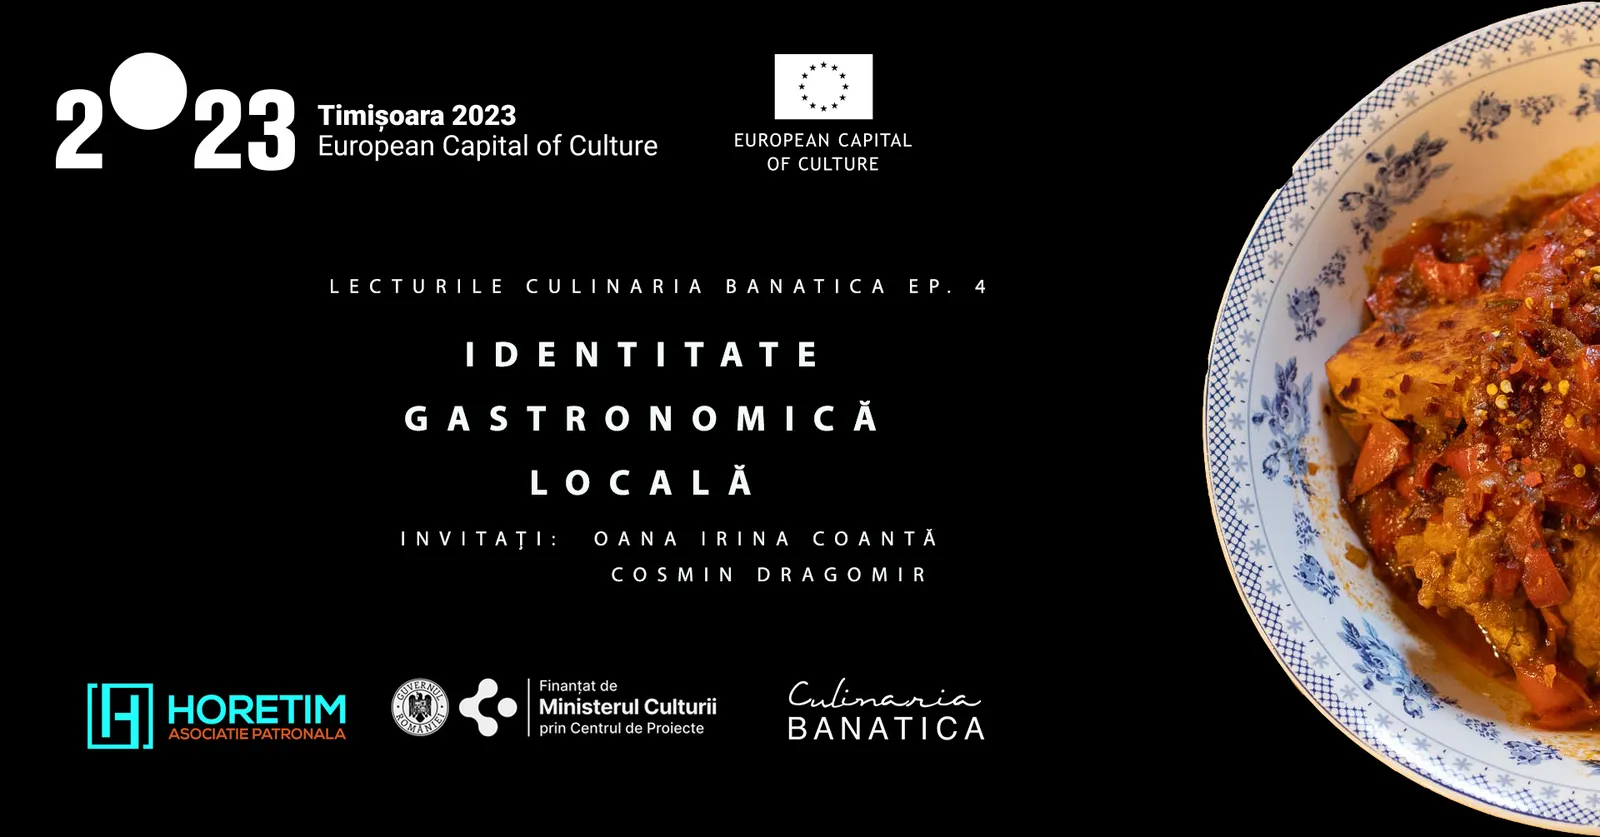 Culinaria Banatica Lectures 4: Local Gastronomic Identity